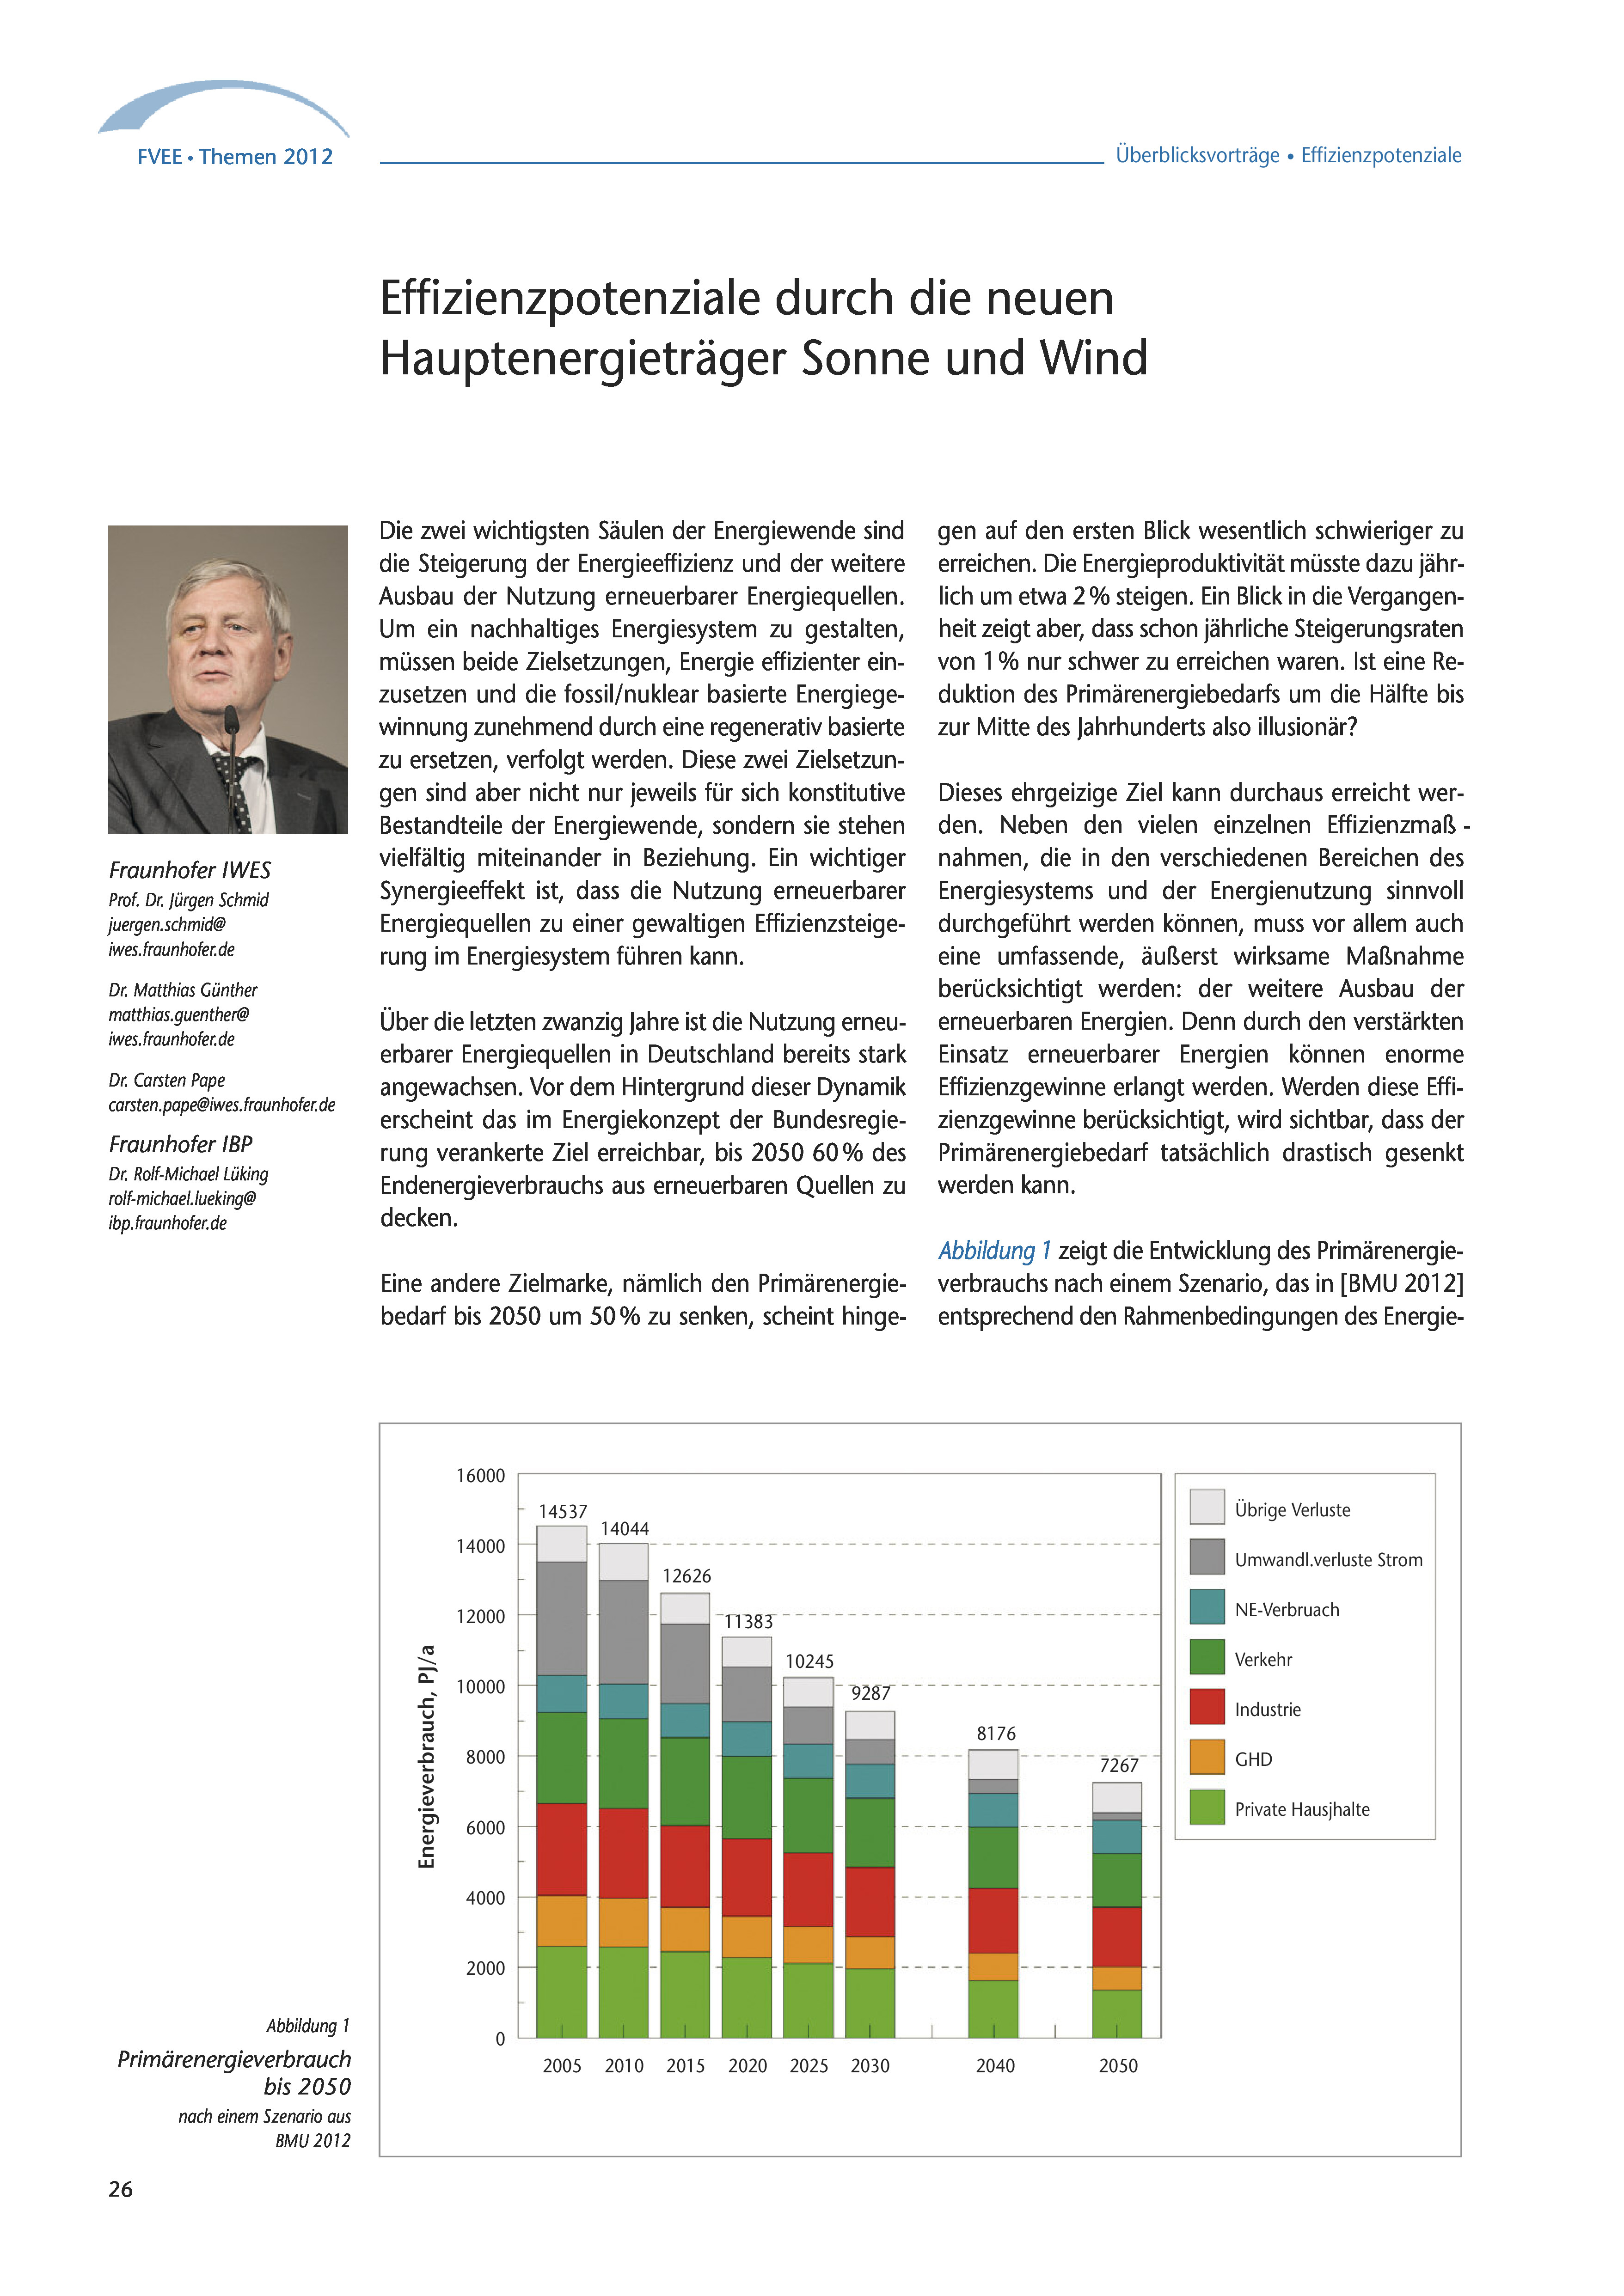 Themen 2012: Zusammenarbeit von Forschung und Wirtschaft für Erneuerbare Energien und Energieeffizienz